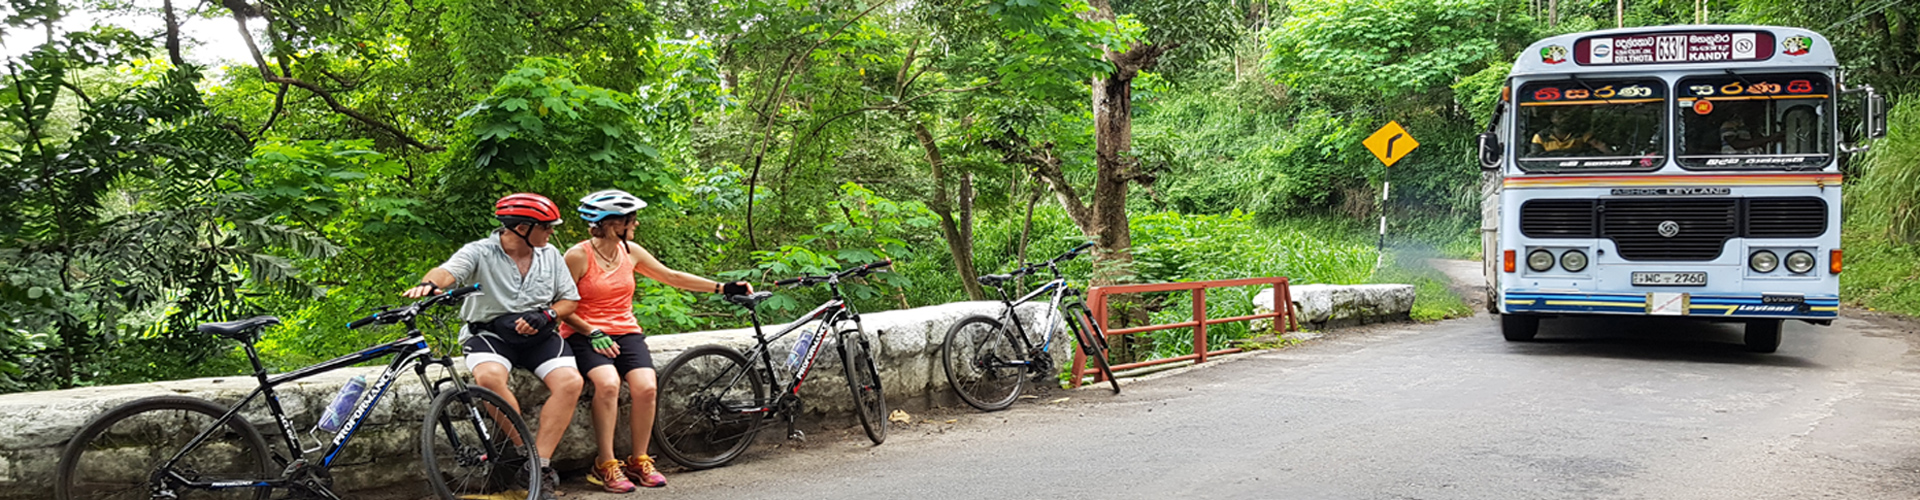 Cycle Sri Lanka: North